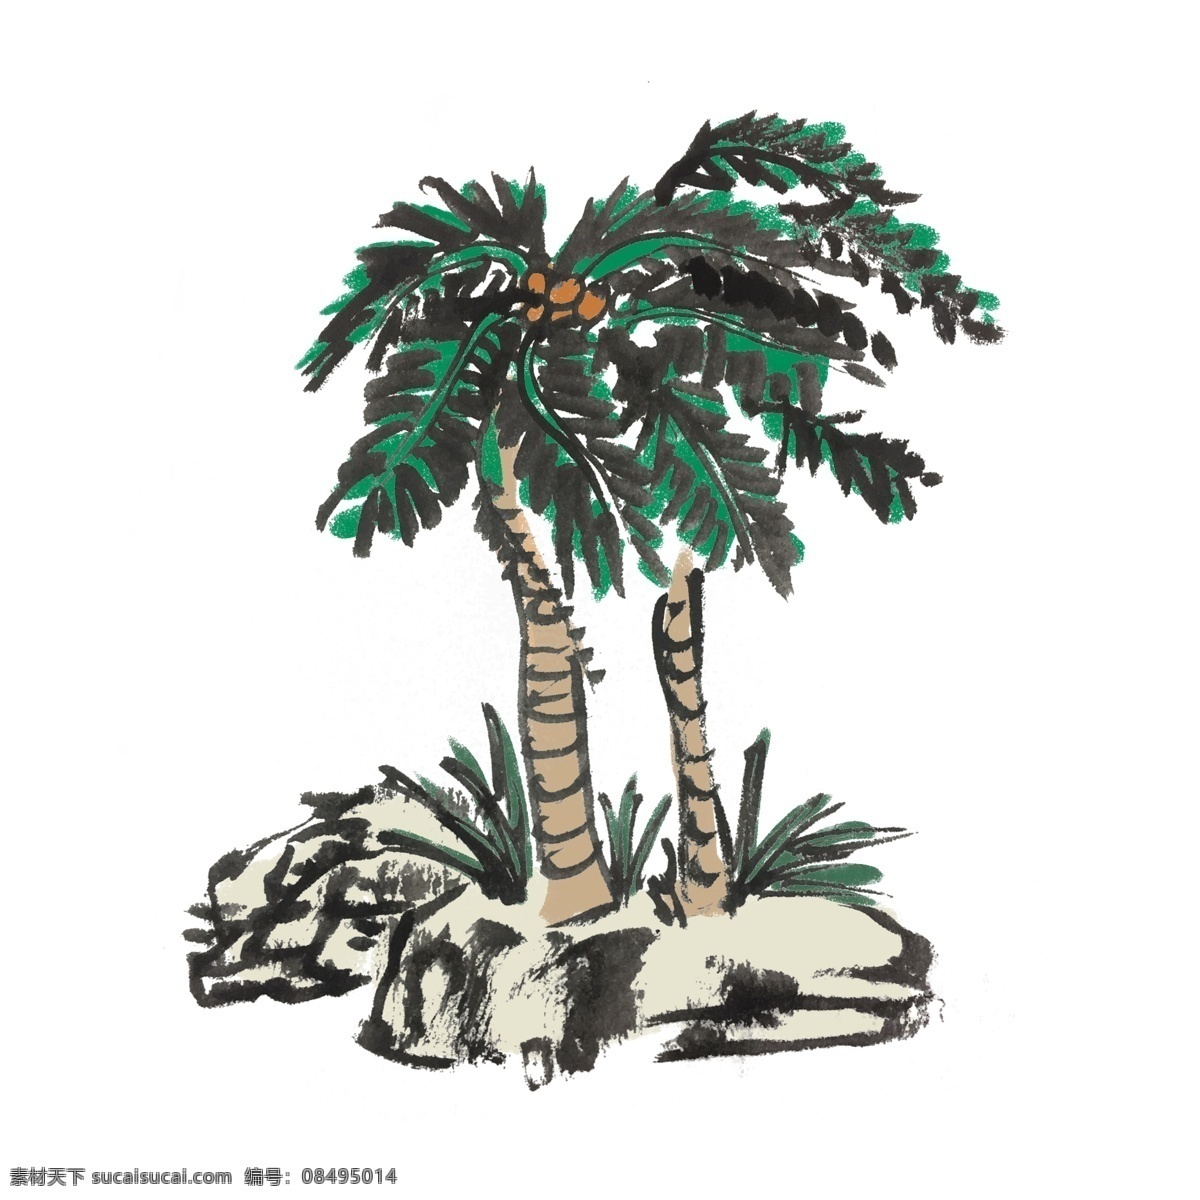 夏天 椰子树 手绘 水墨 风 夏季 椰子 清凉 水果 中国风 古风 水墨风 墨迹 彩色 插画 生动 花草 国风 国画